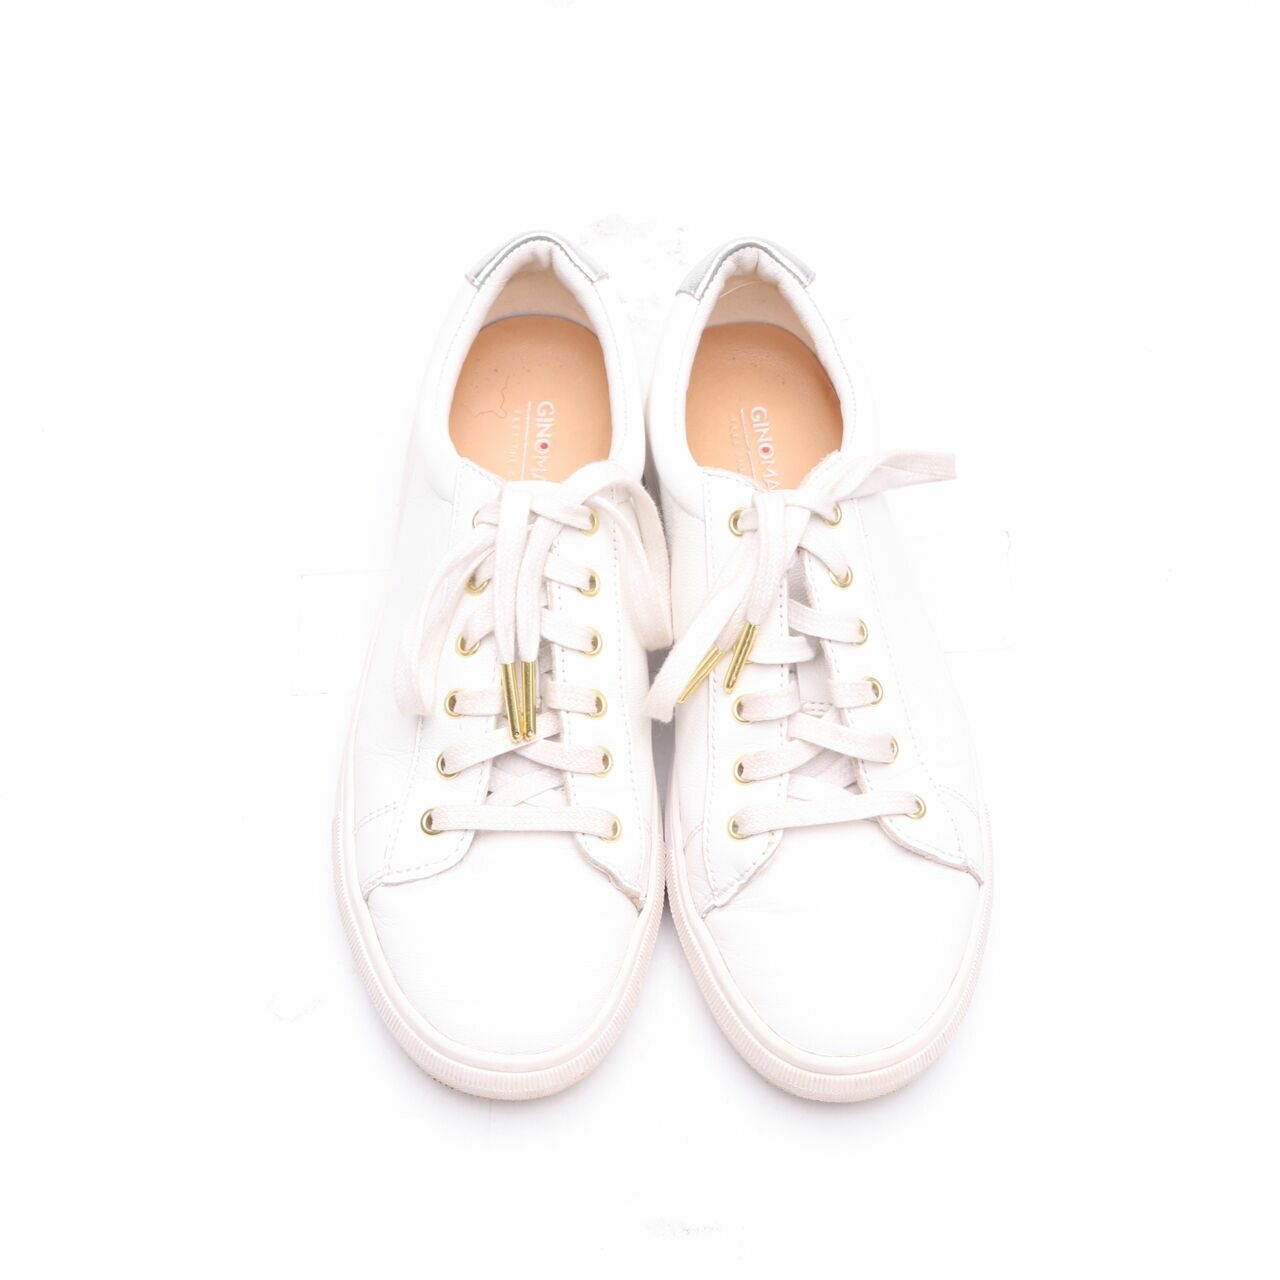 Gino Mariani White Sneakers